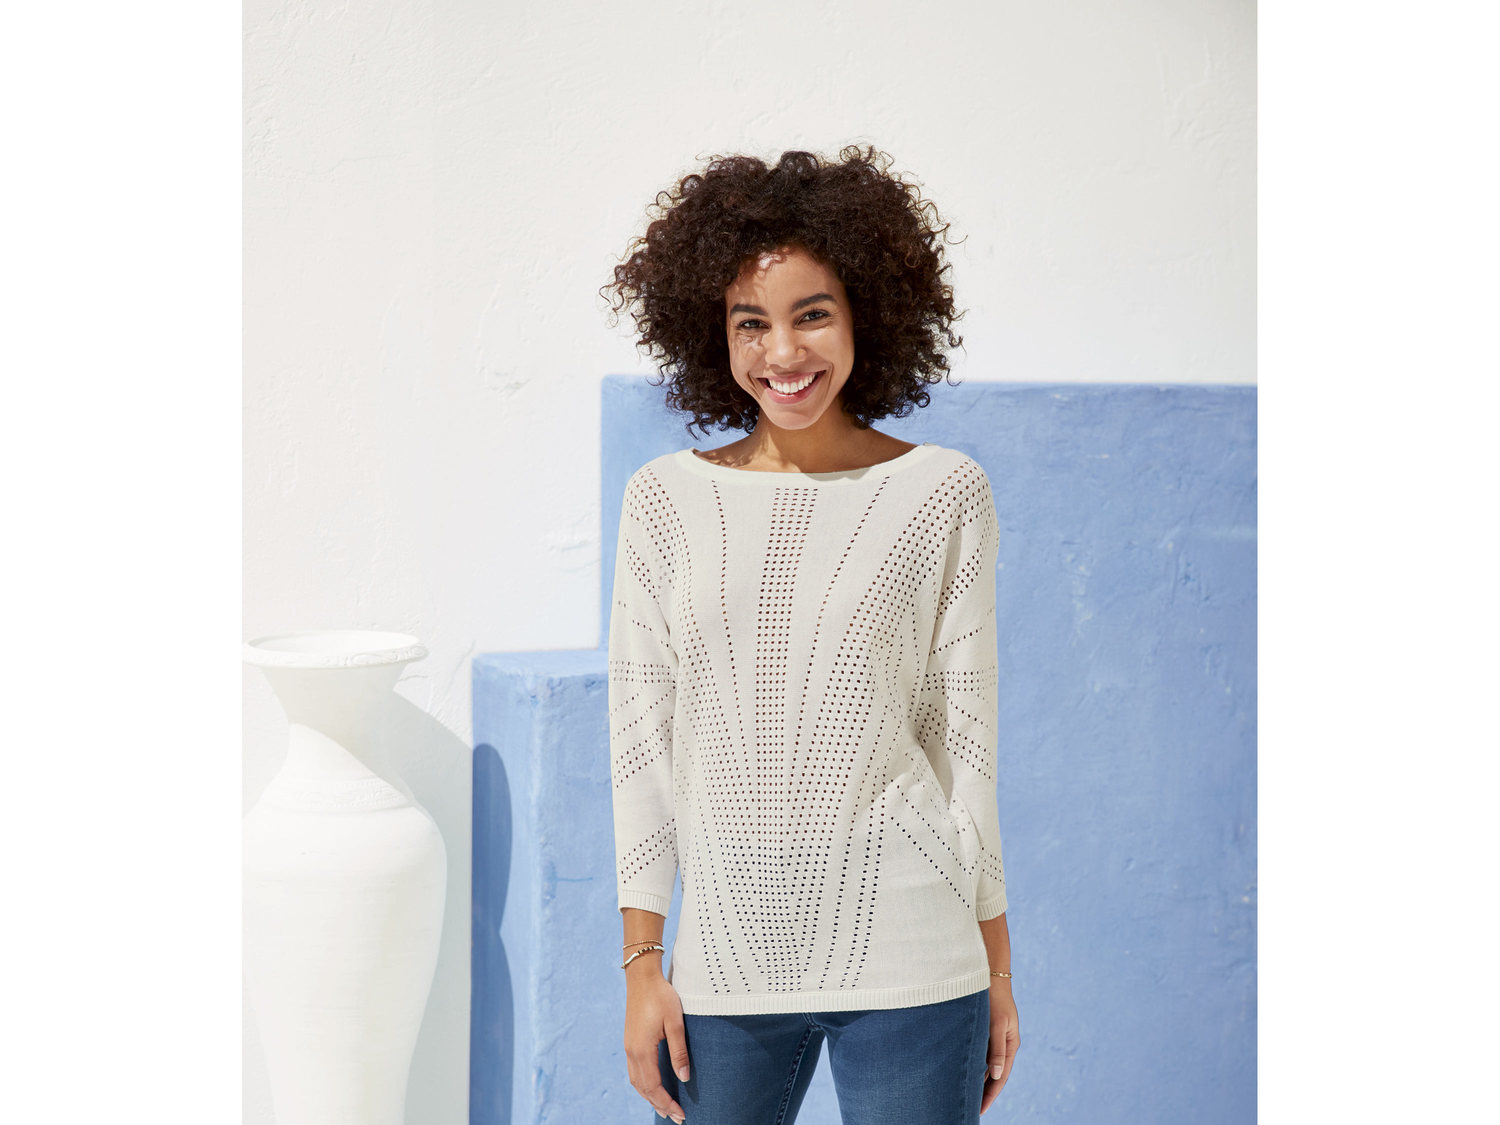 Letni sweterek Esmara, cena 29,99 PLN 
- rozmiary: XS-L
- bardzo przewiewny, idealny ...